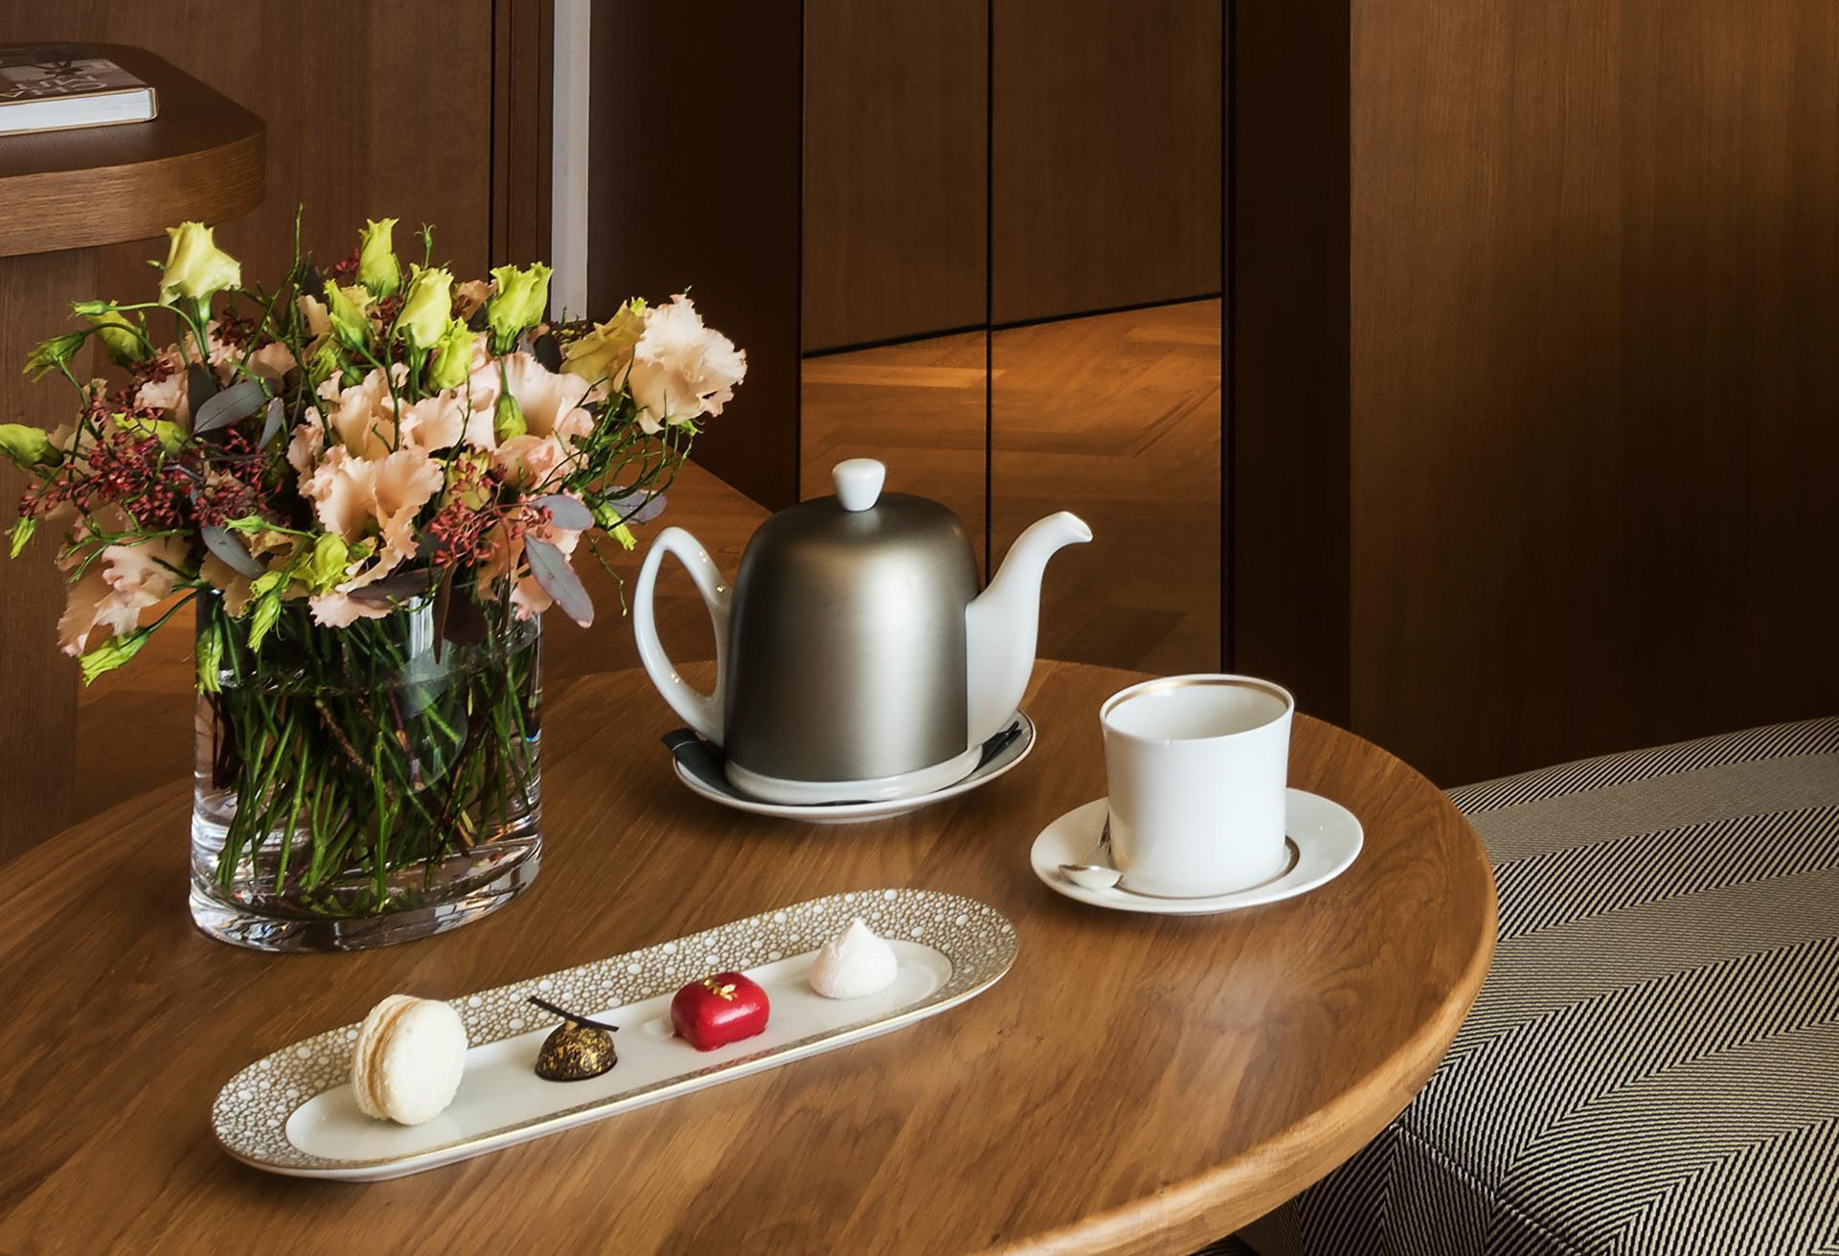 Palace Hotel – Burgenstock Hotels & Resort – Obburgen, Switzerland – Deluxe Alpine View Room Coffee Service